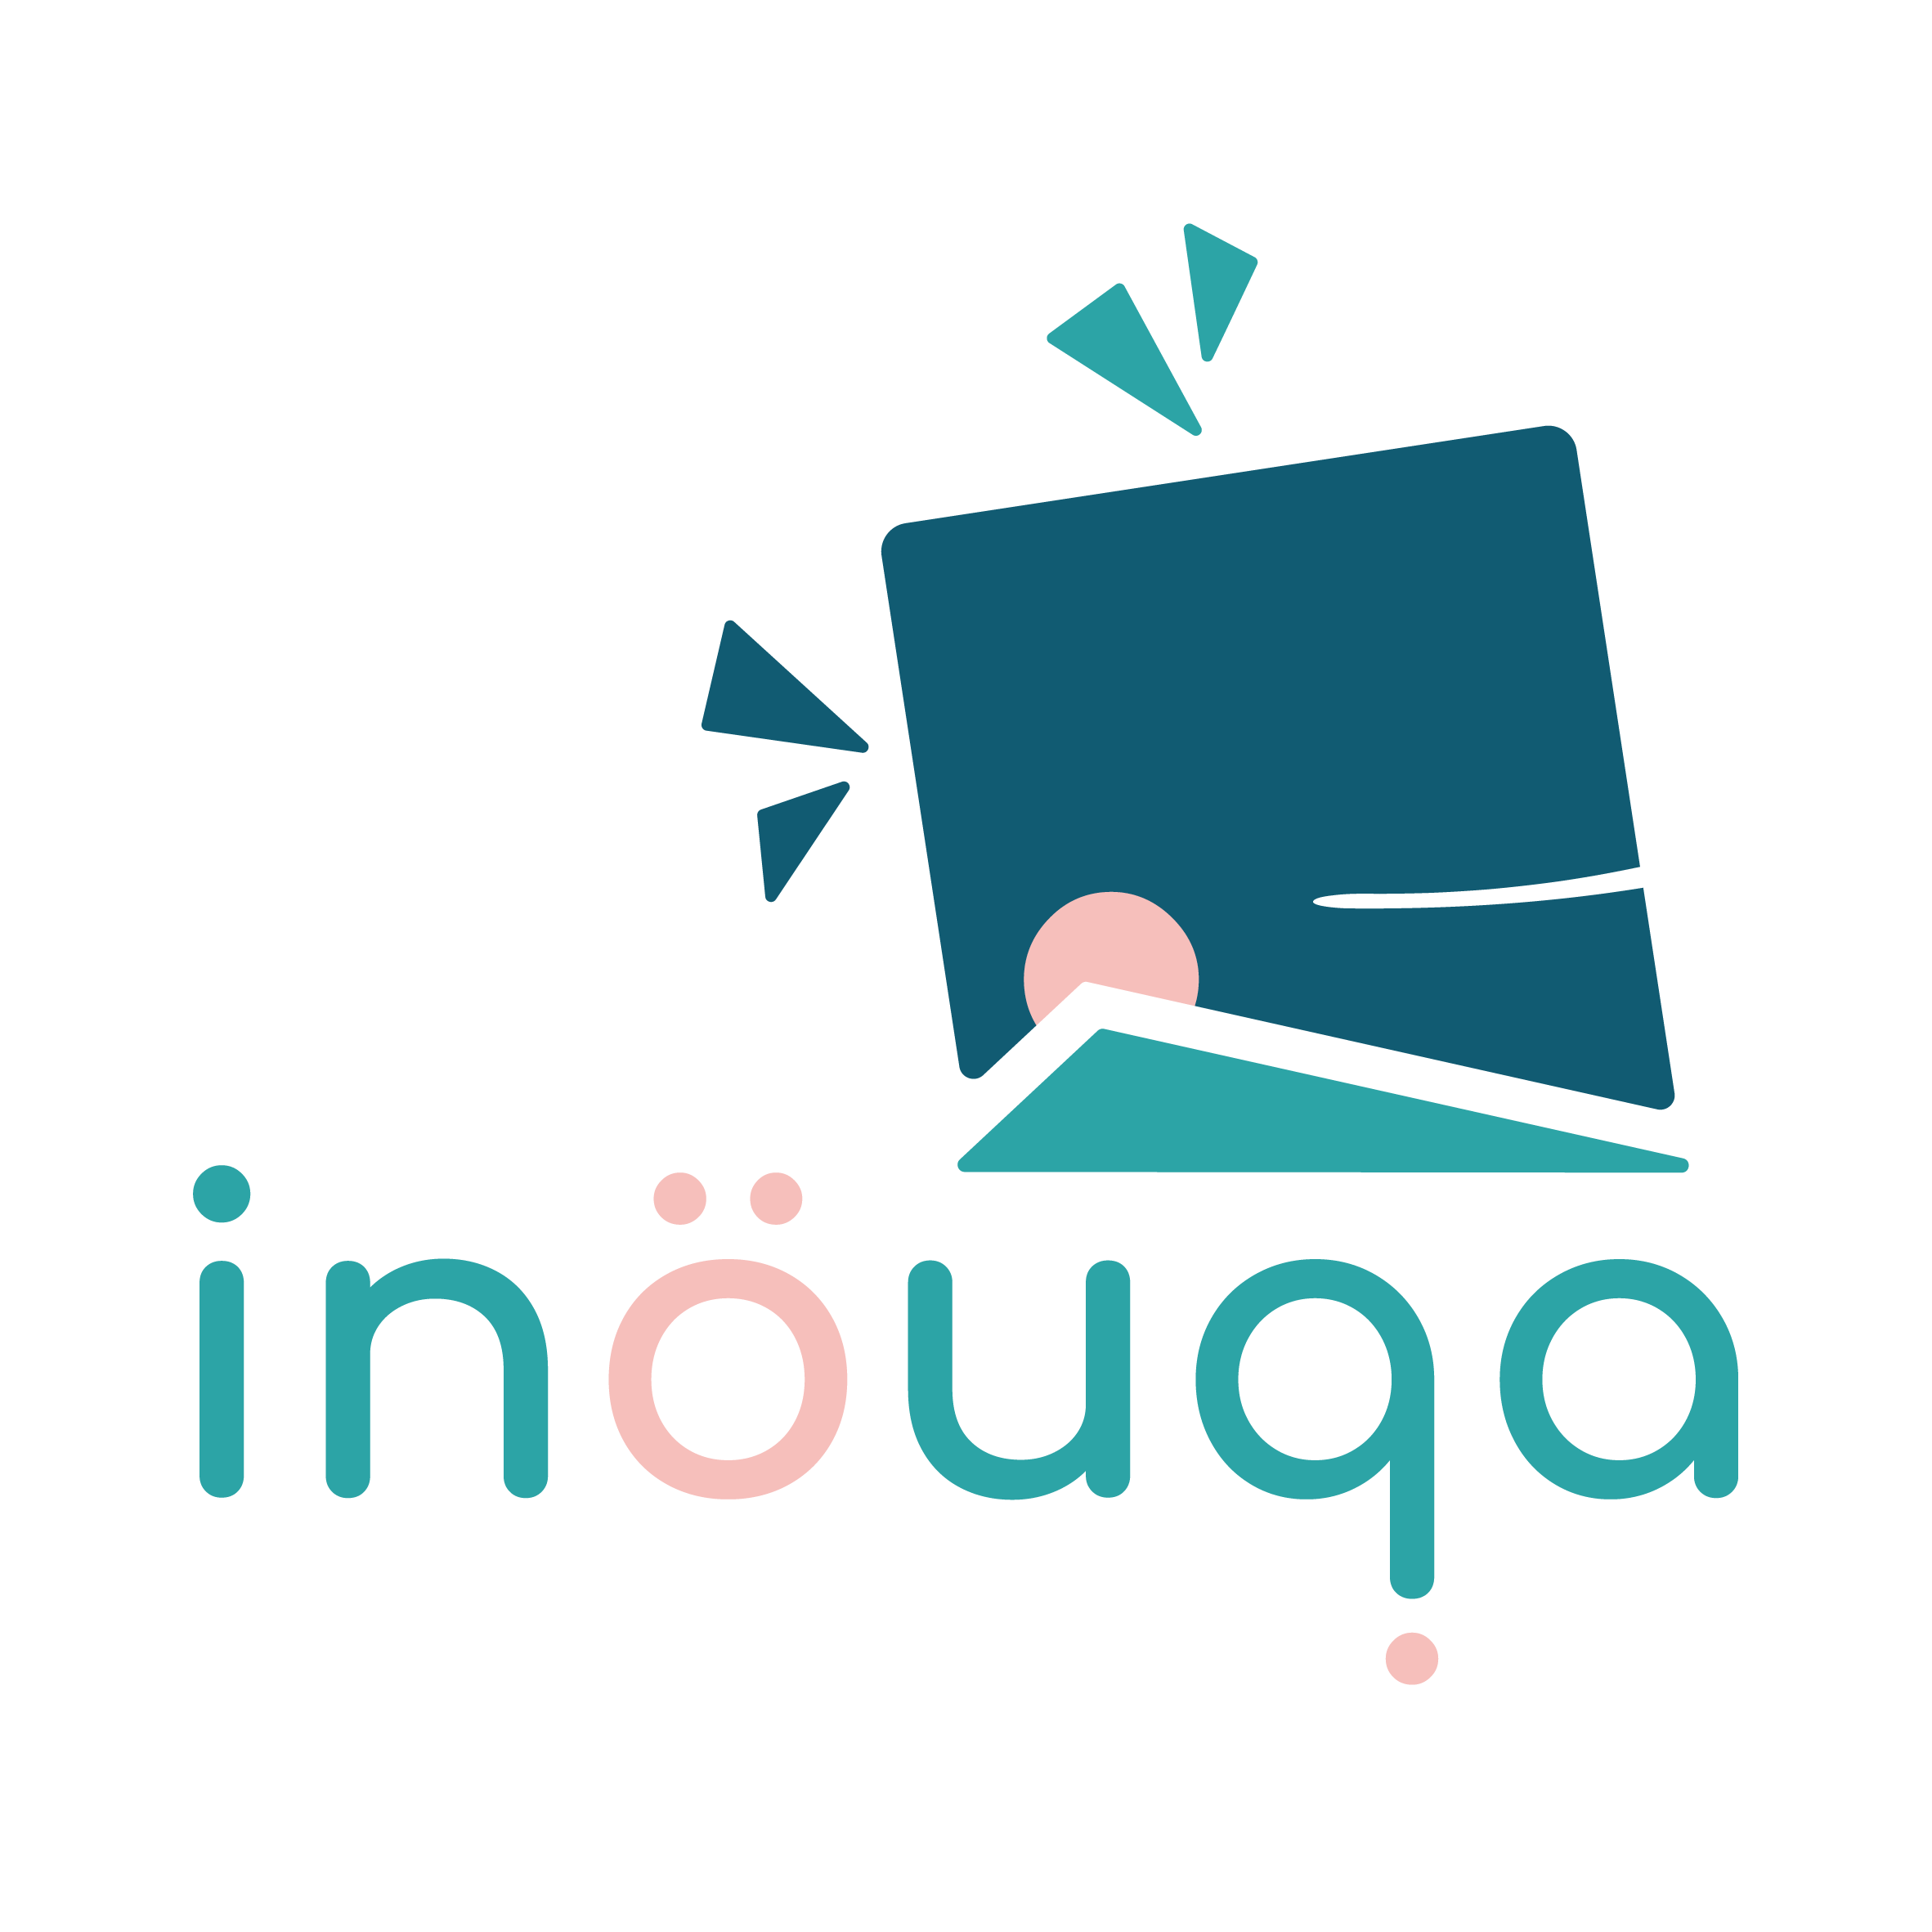 Inouqa